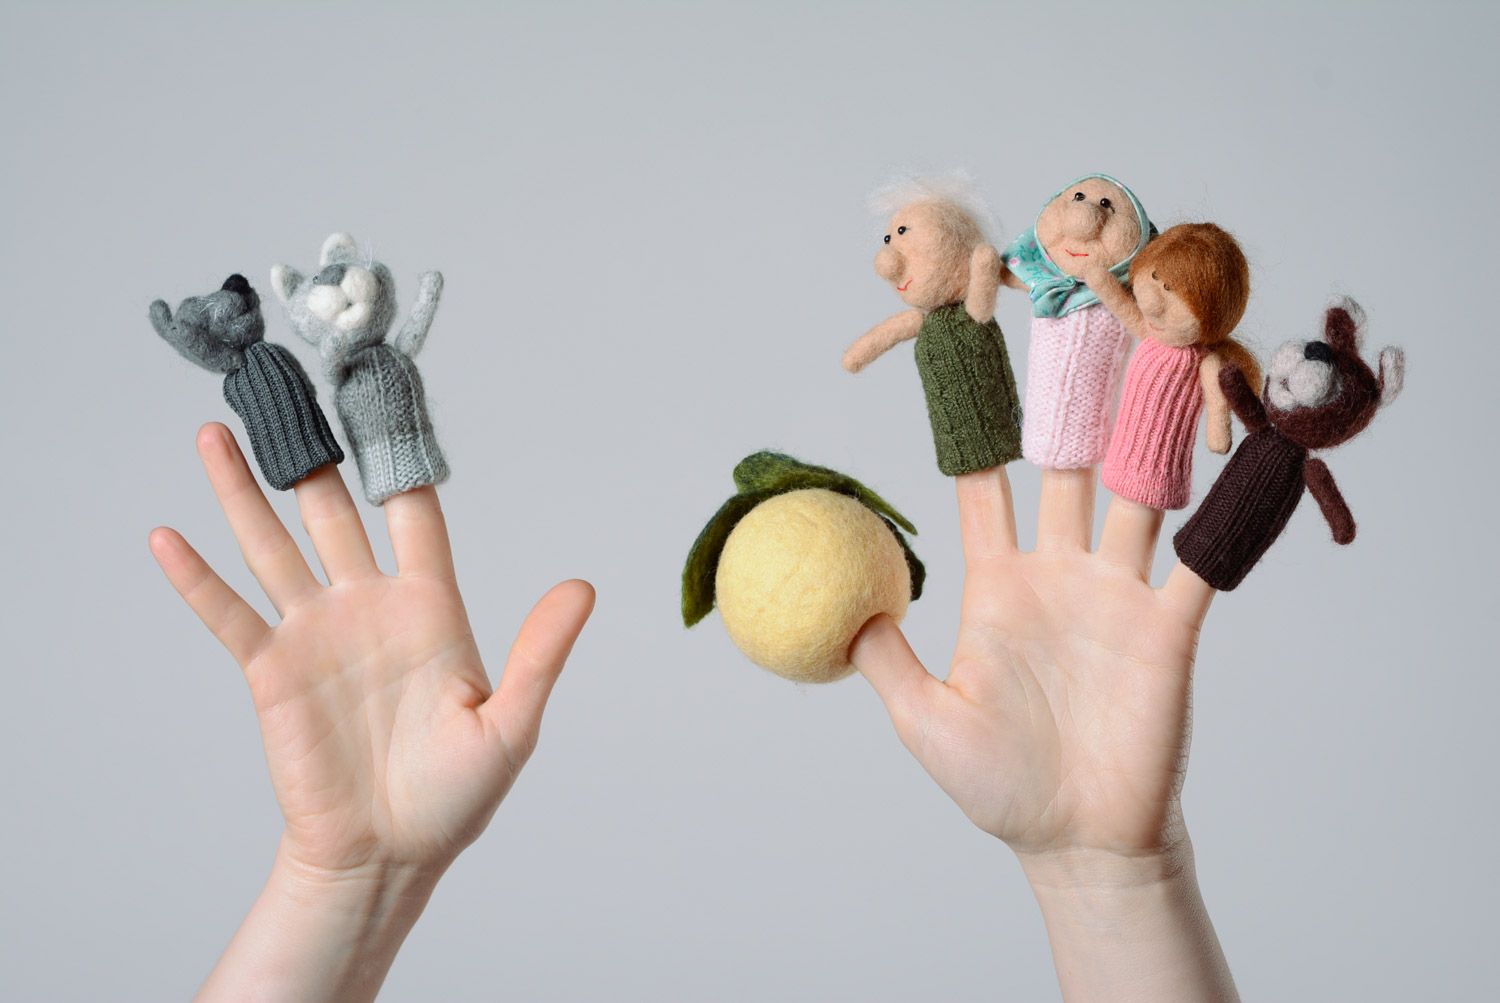 Teatro de títeres de dedos artesanales 6 personajes del cuento Nabo gigante foto 1